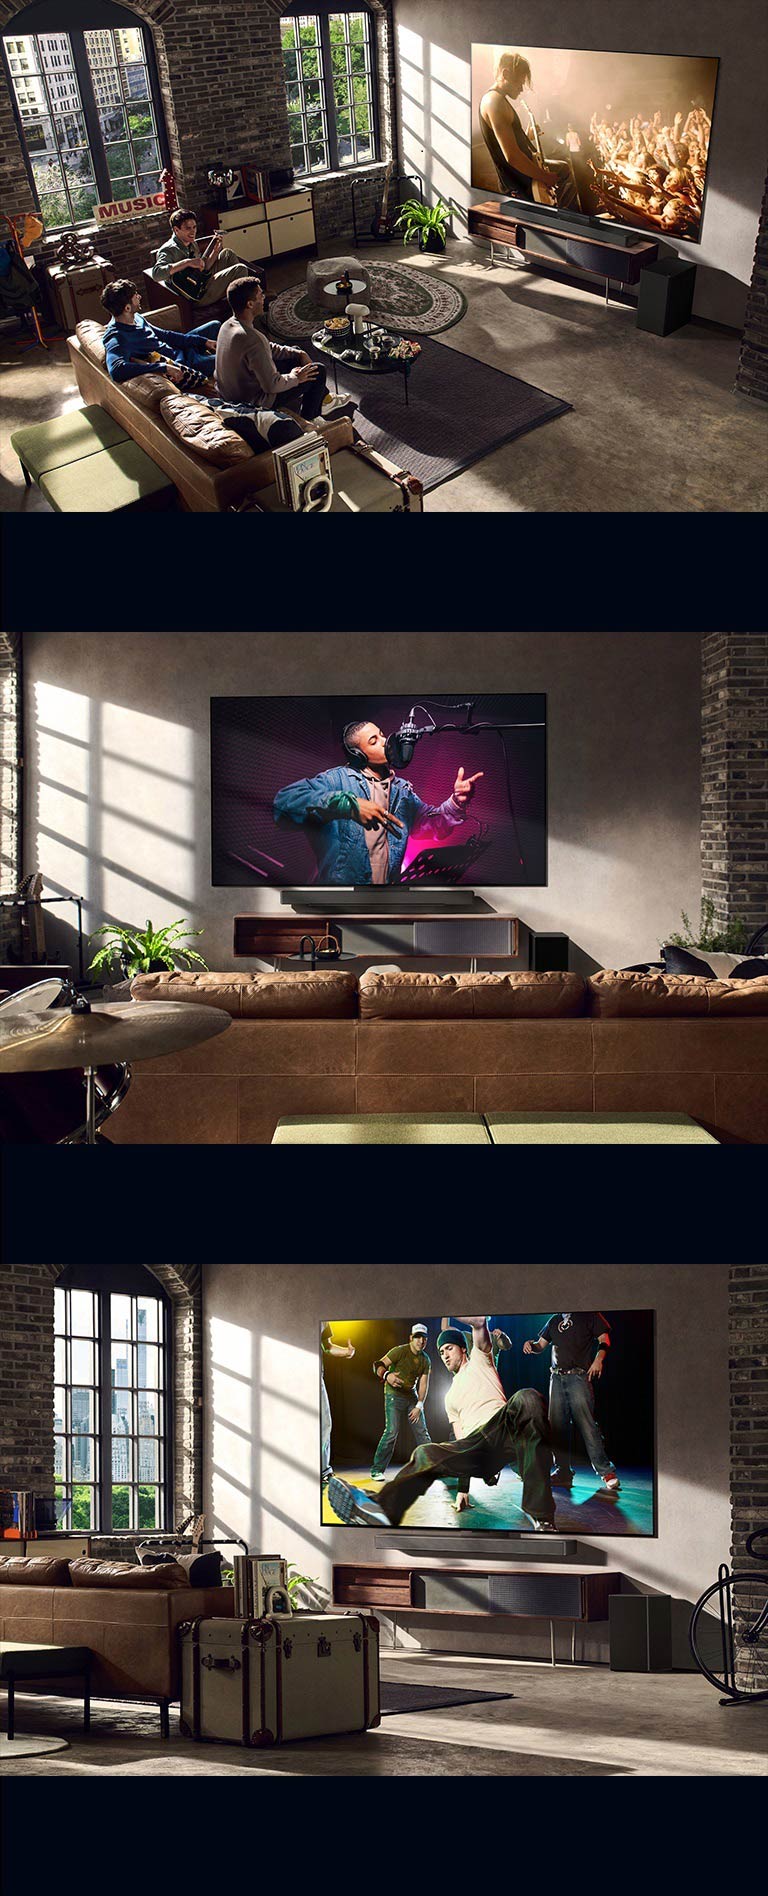 Hay tres imágenes estilos de vida. Desde arriba hacia abajo: tres hombres disfrutan de un video de un concierto en la sala de estar. Hay un televisor LG en la pared que muestra una escena de grabación de música y el televisor LG en la pared que muestra una escena de break dance en una vista diagonal.